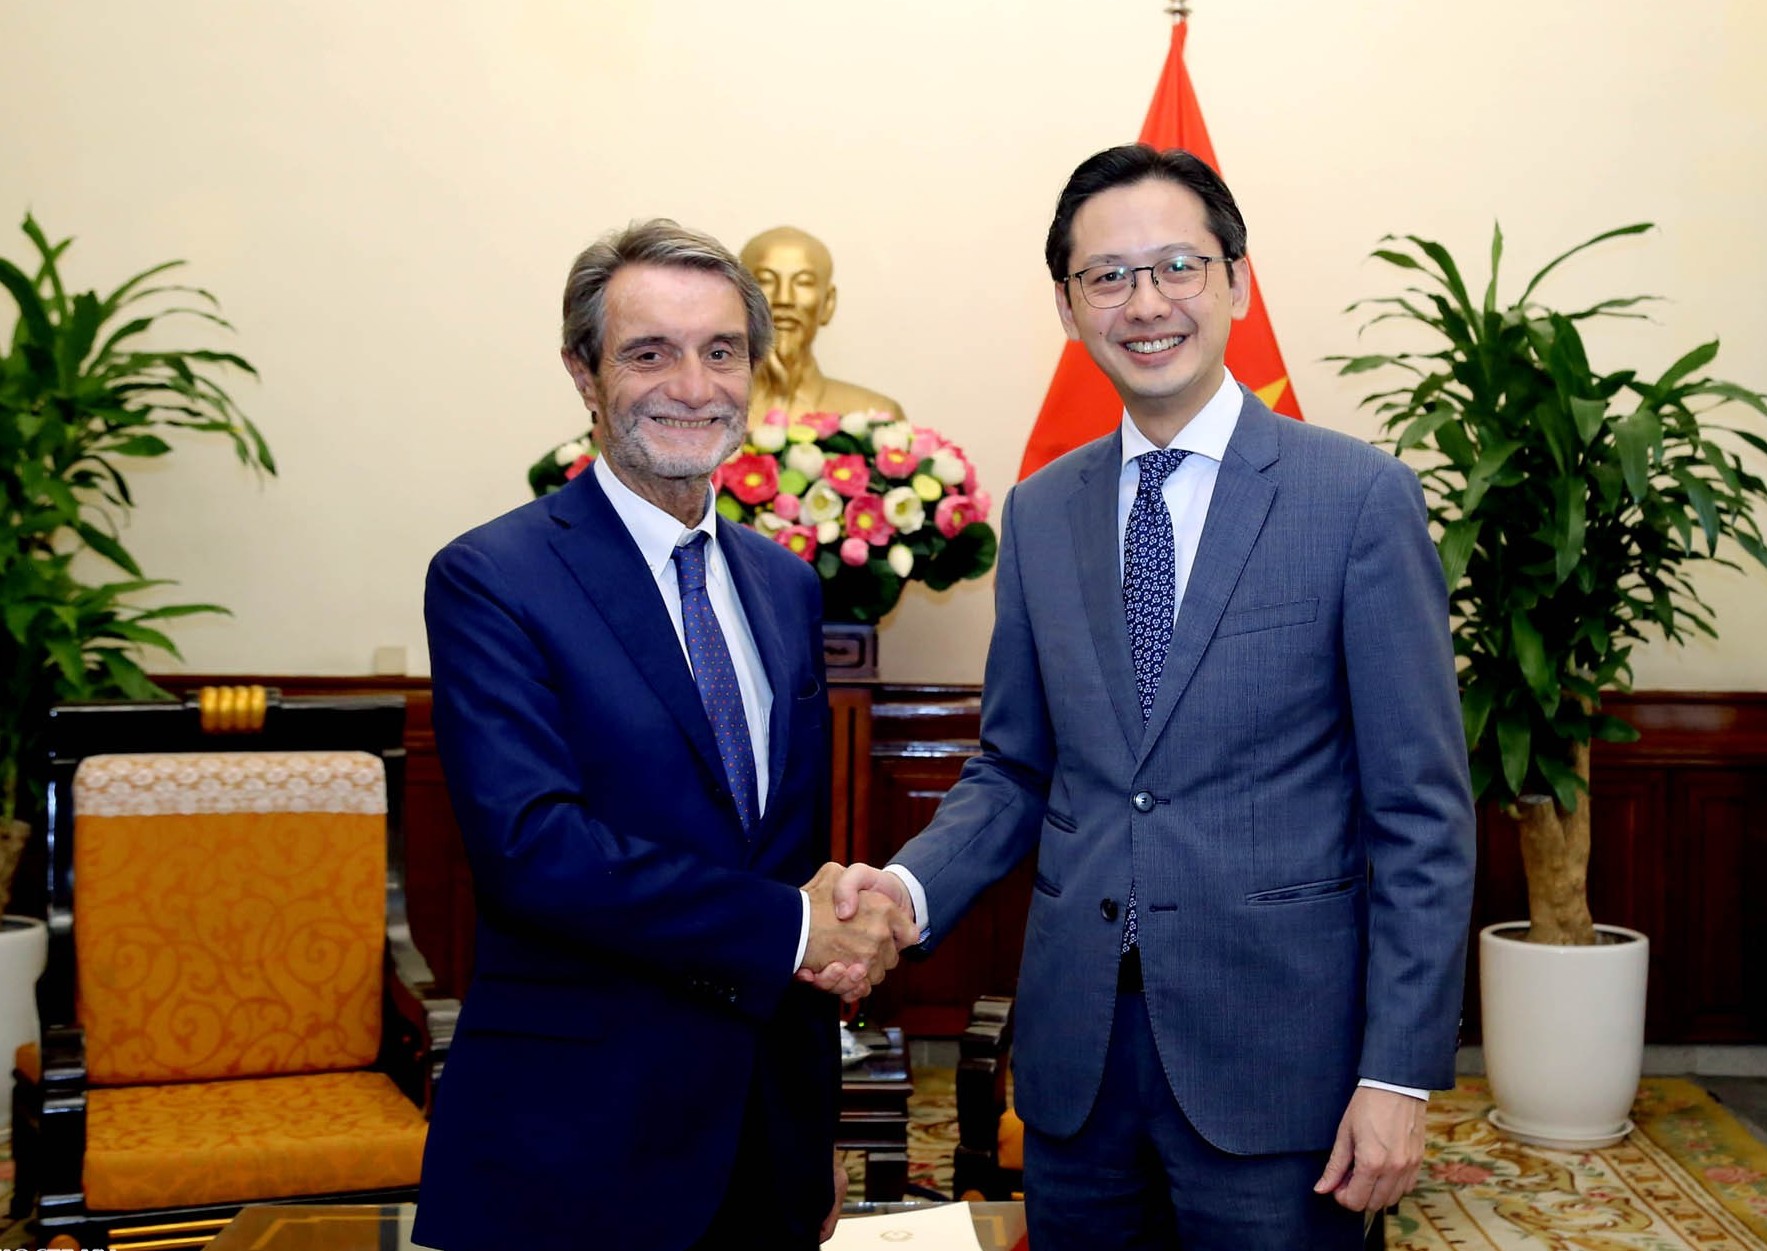 Việt Nam và Vùng Lombardia, Italy có nhiều tiềm năng hợp tác trong các lĩnh vực mới